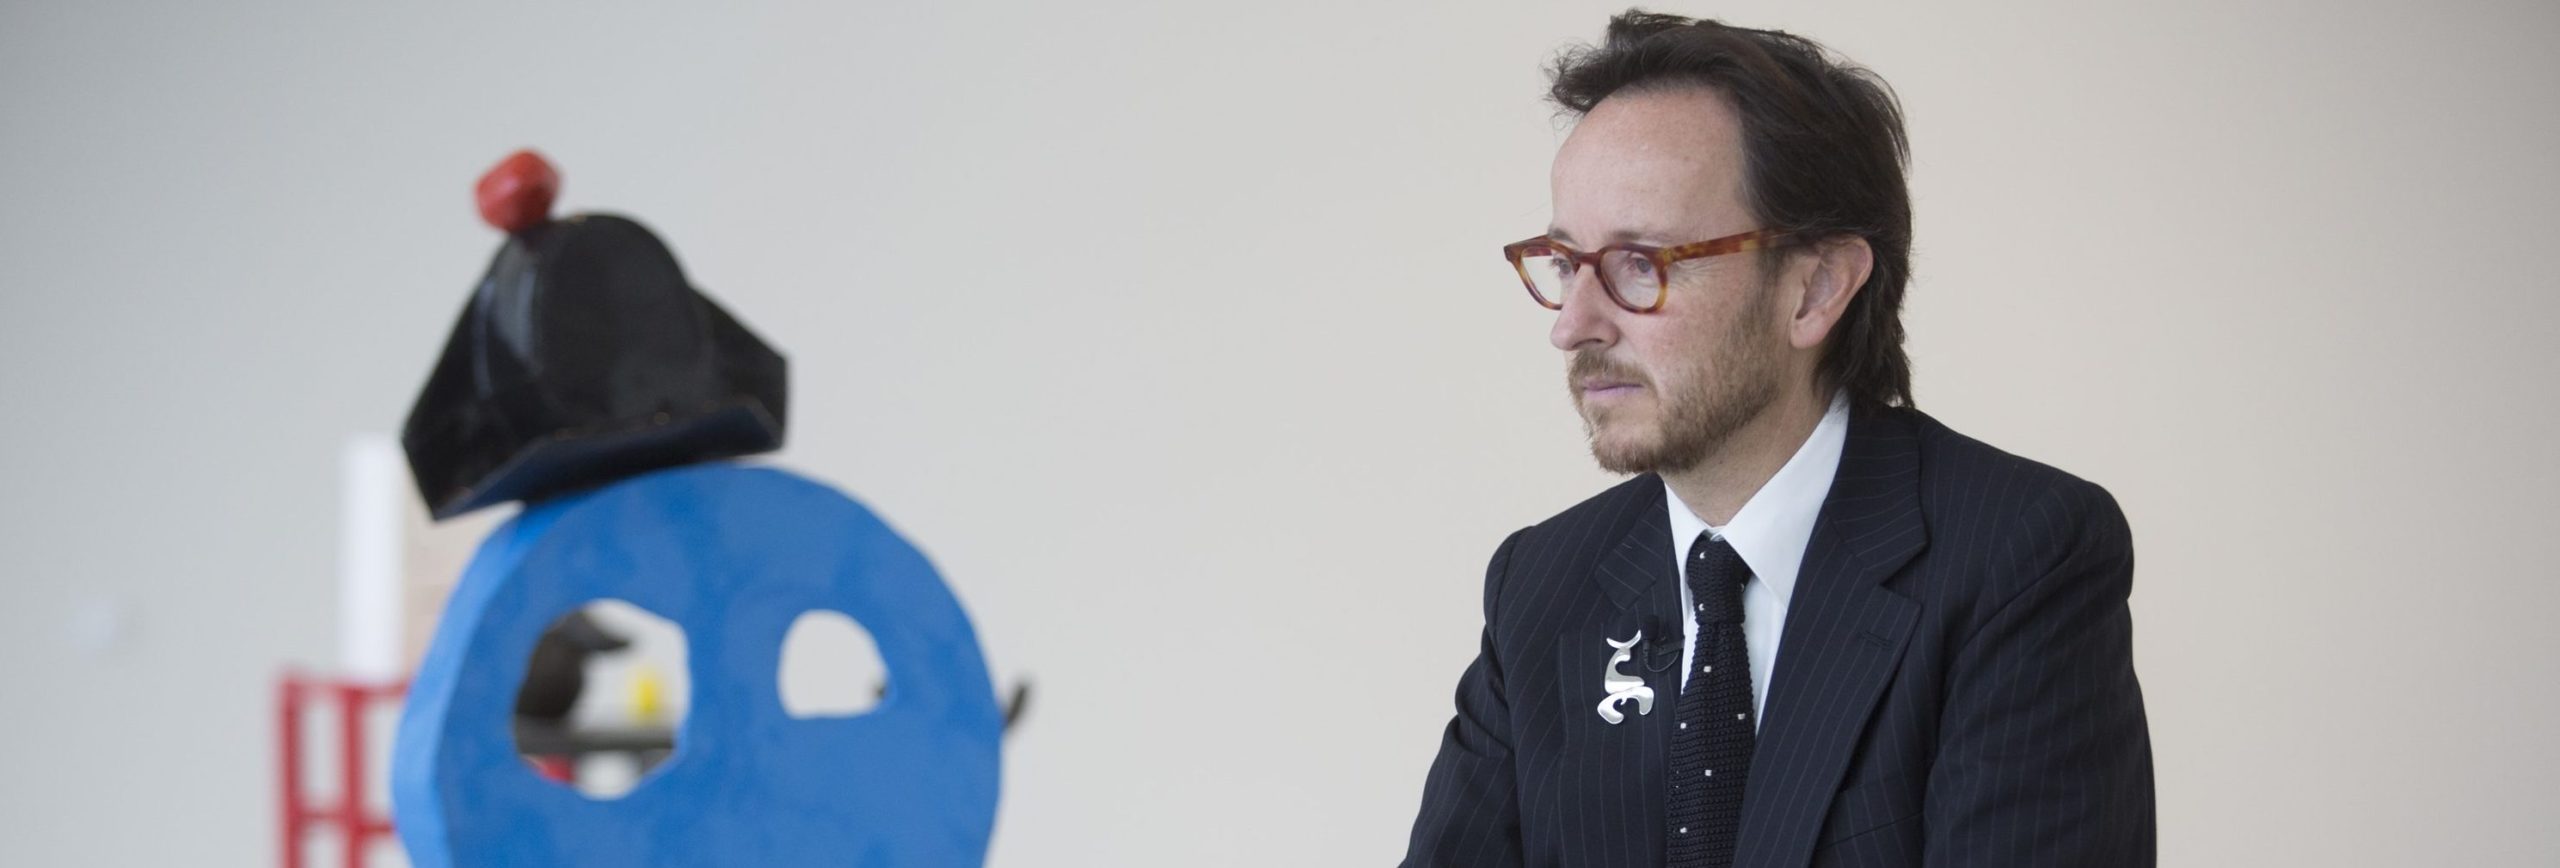 Joan Punyet Miró: “Las obras de mi abuelo se consideran blue chip”